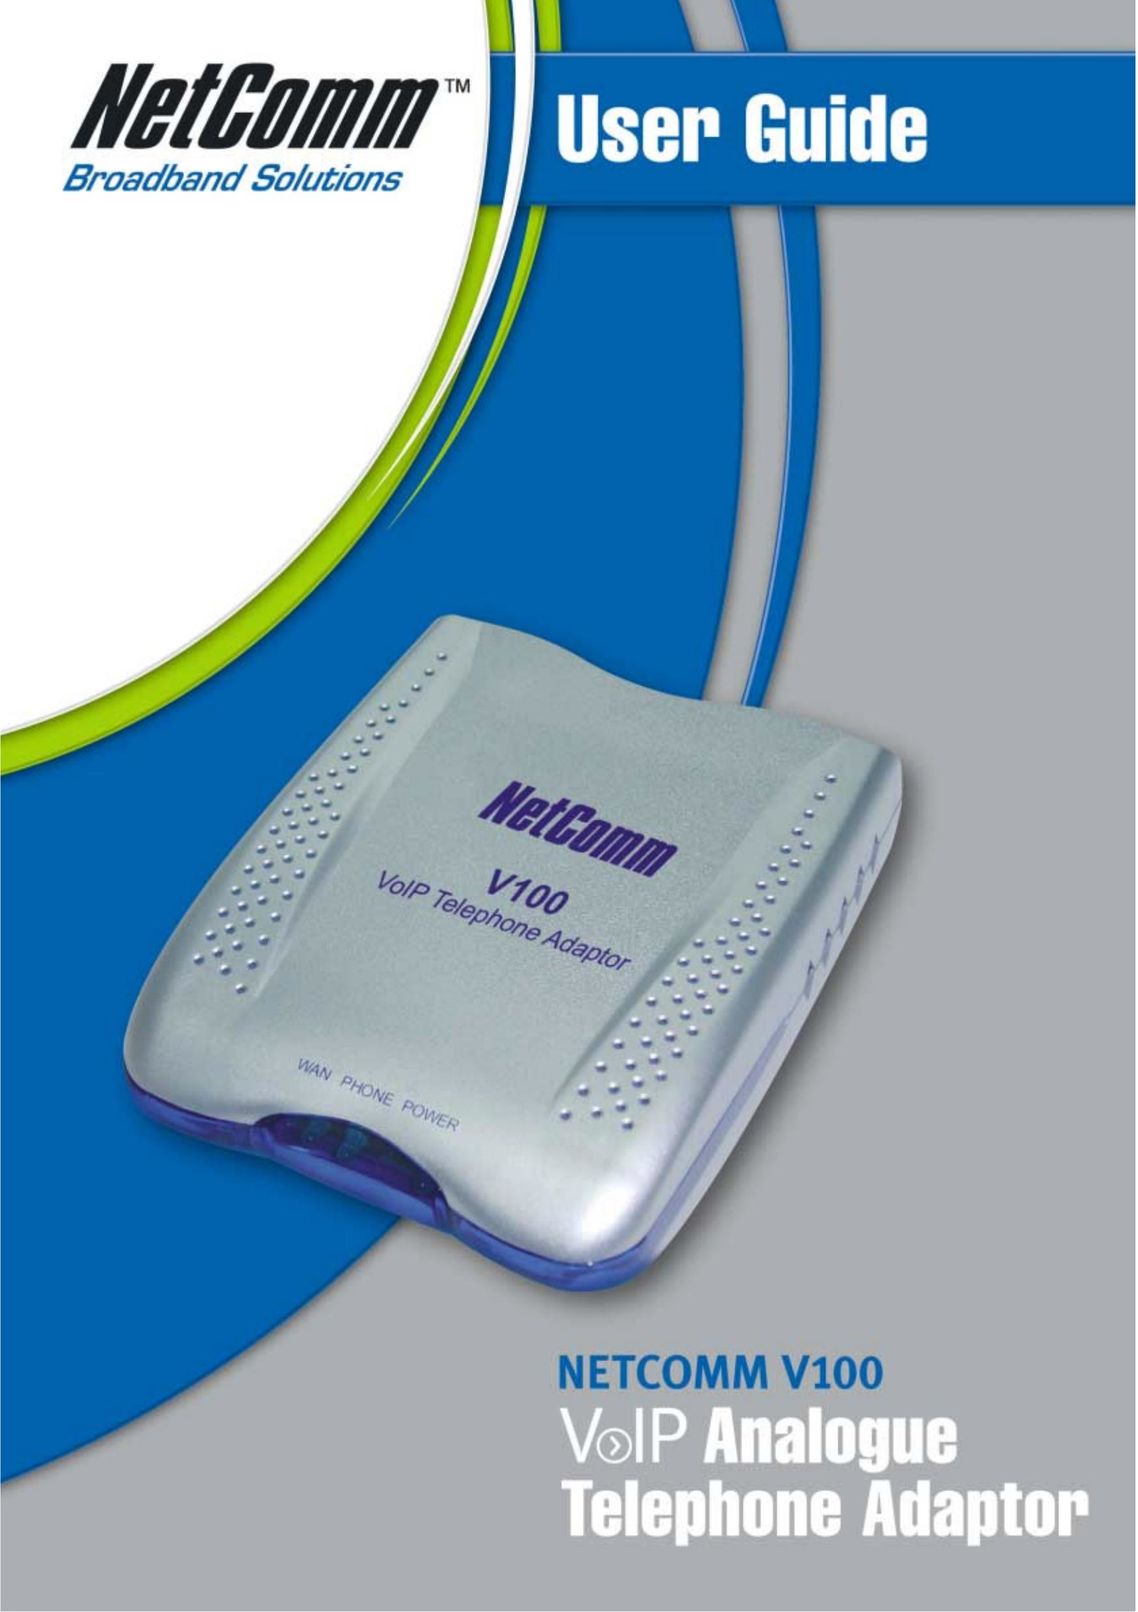 NetComm V100 Telephone User Manual